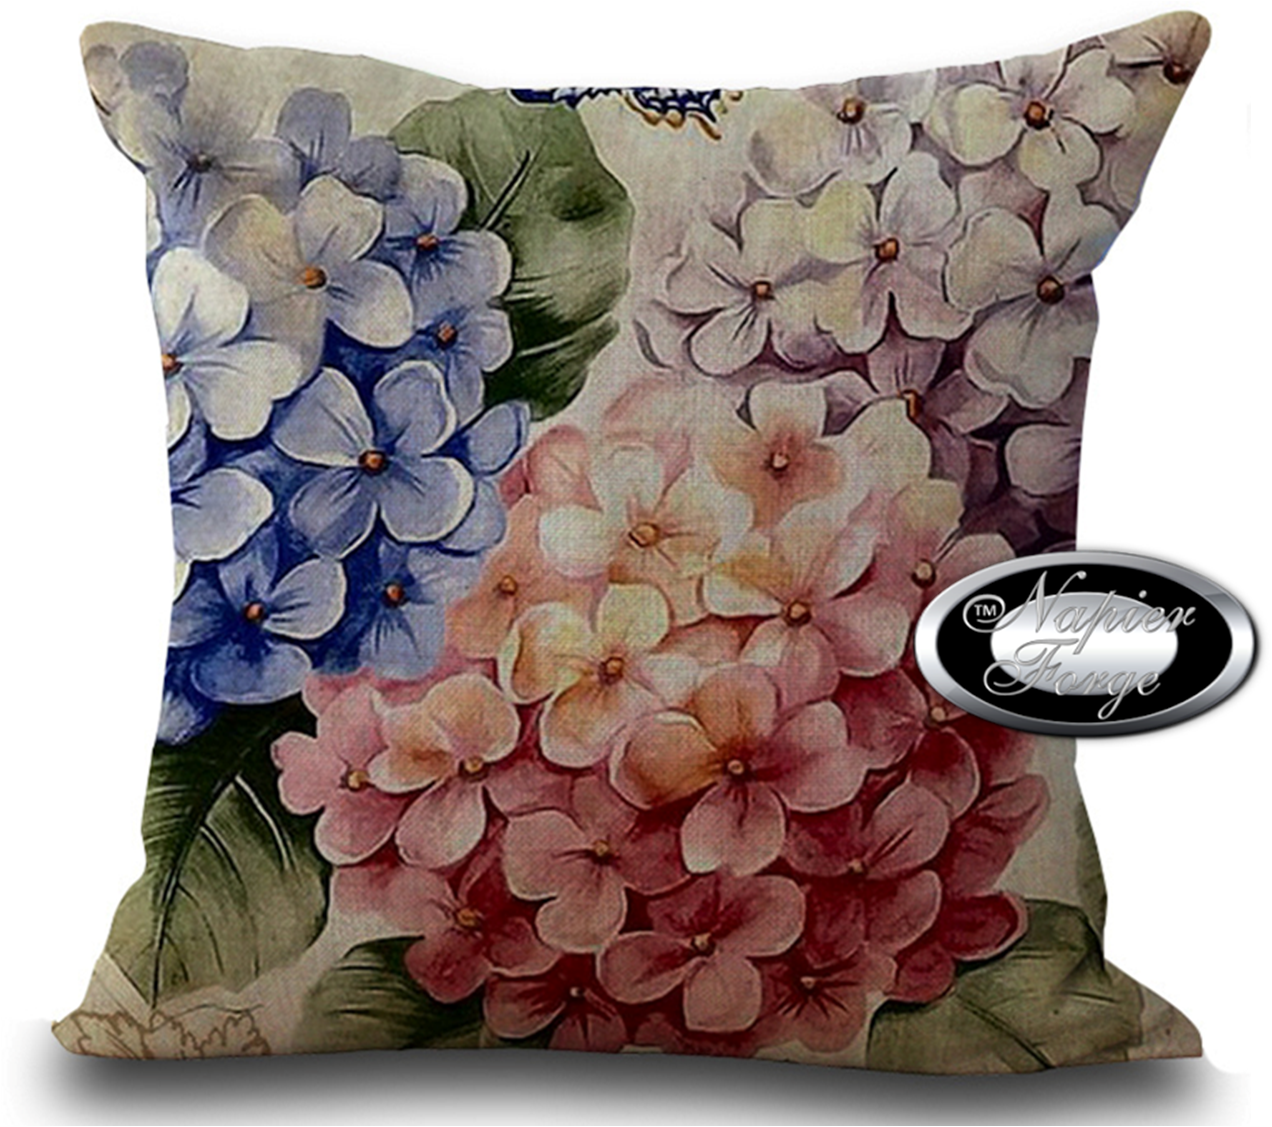 Farmhouse Cotton Linen Blend Cushion Cover 45cm x 45cm - Design Vintage Hydrangea Bouquet *Free Shipping